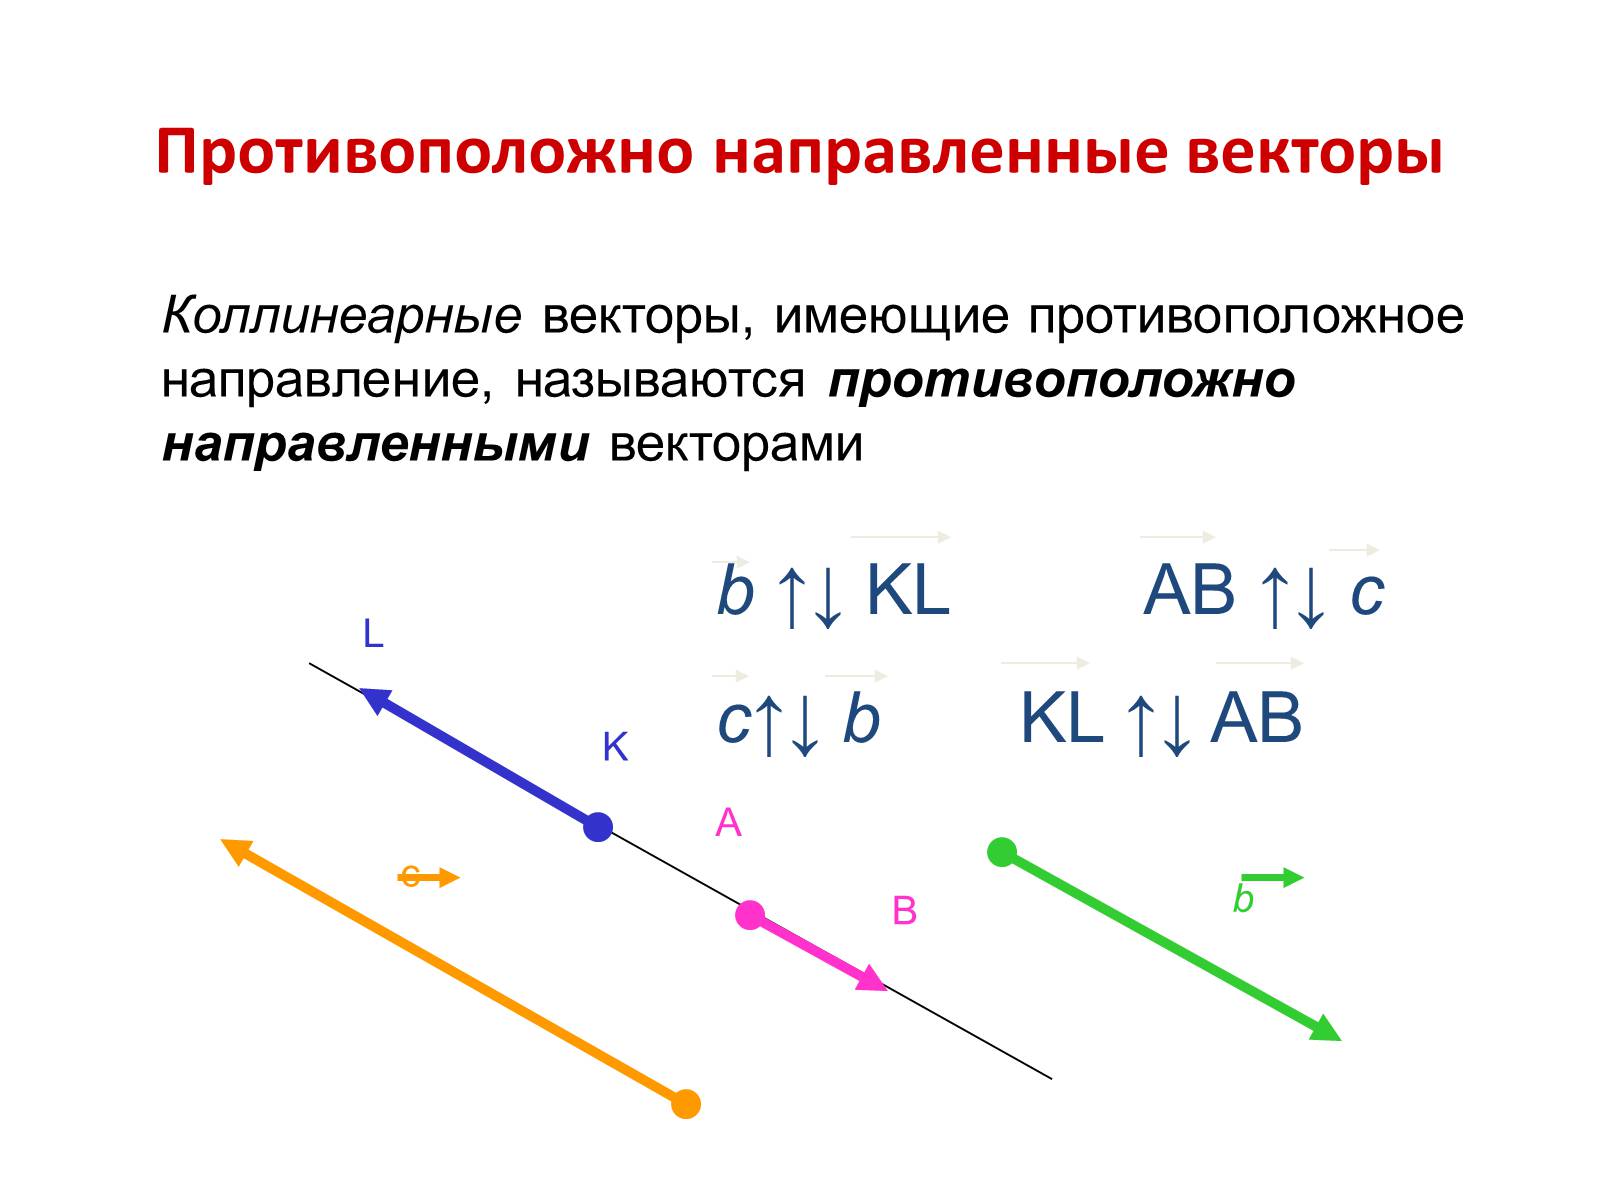 Вектор с и b противоположно направлены. Коллинеарные сонаправленные векторы. Коллинеарные противоположно направленные векторы. Коллинеарные векторы сонаправленные и противоположно направленные. Сонаправленные и противоположно направленные векторы.